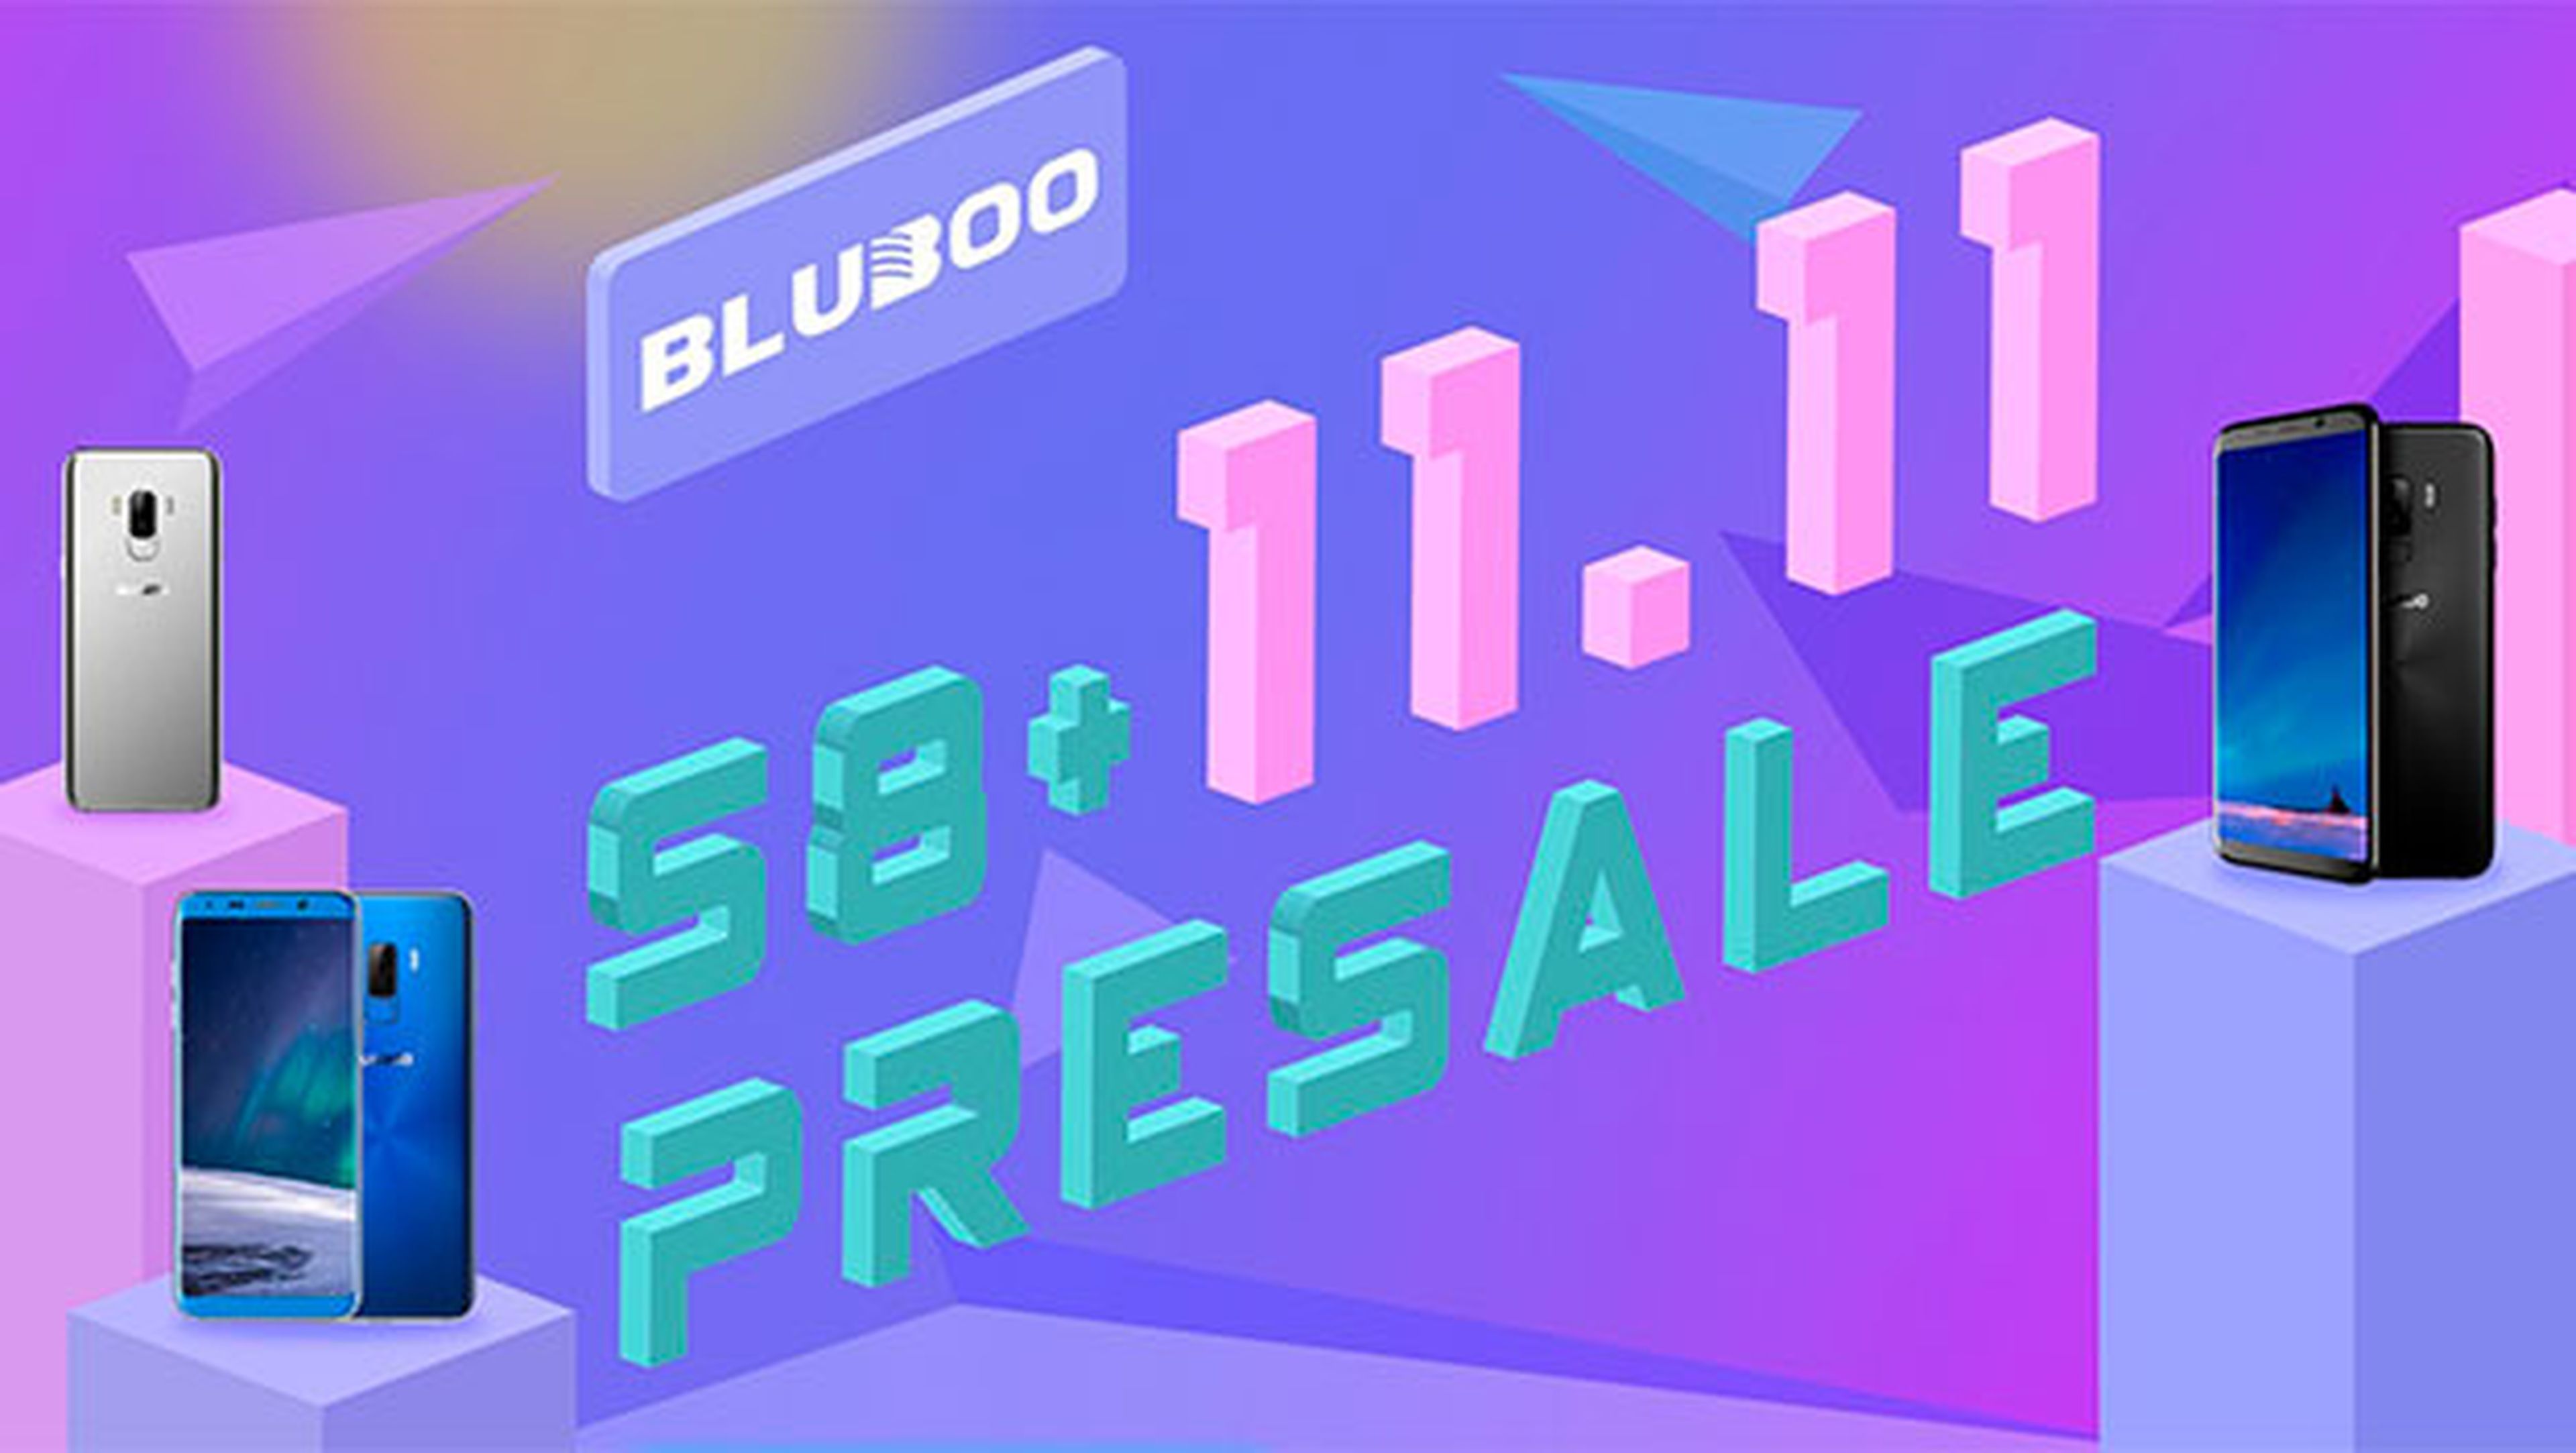 Bluboo S8+ al mejor precio de Internet solo durante el 11.11